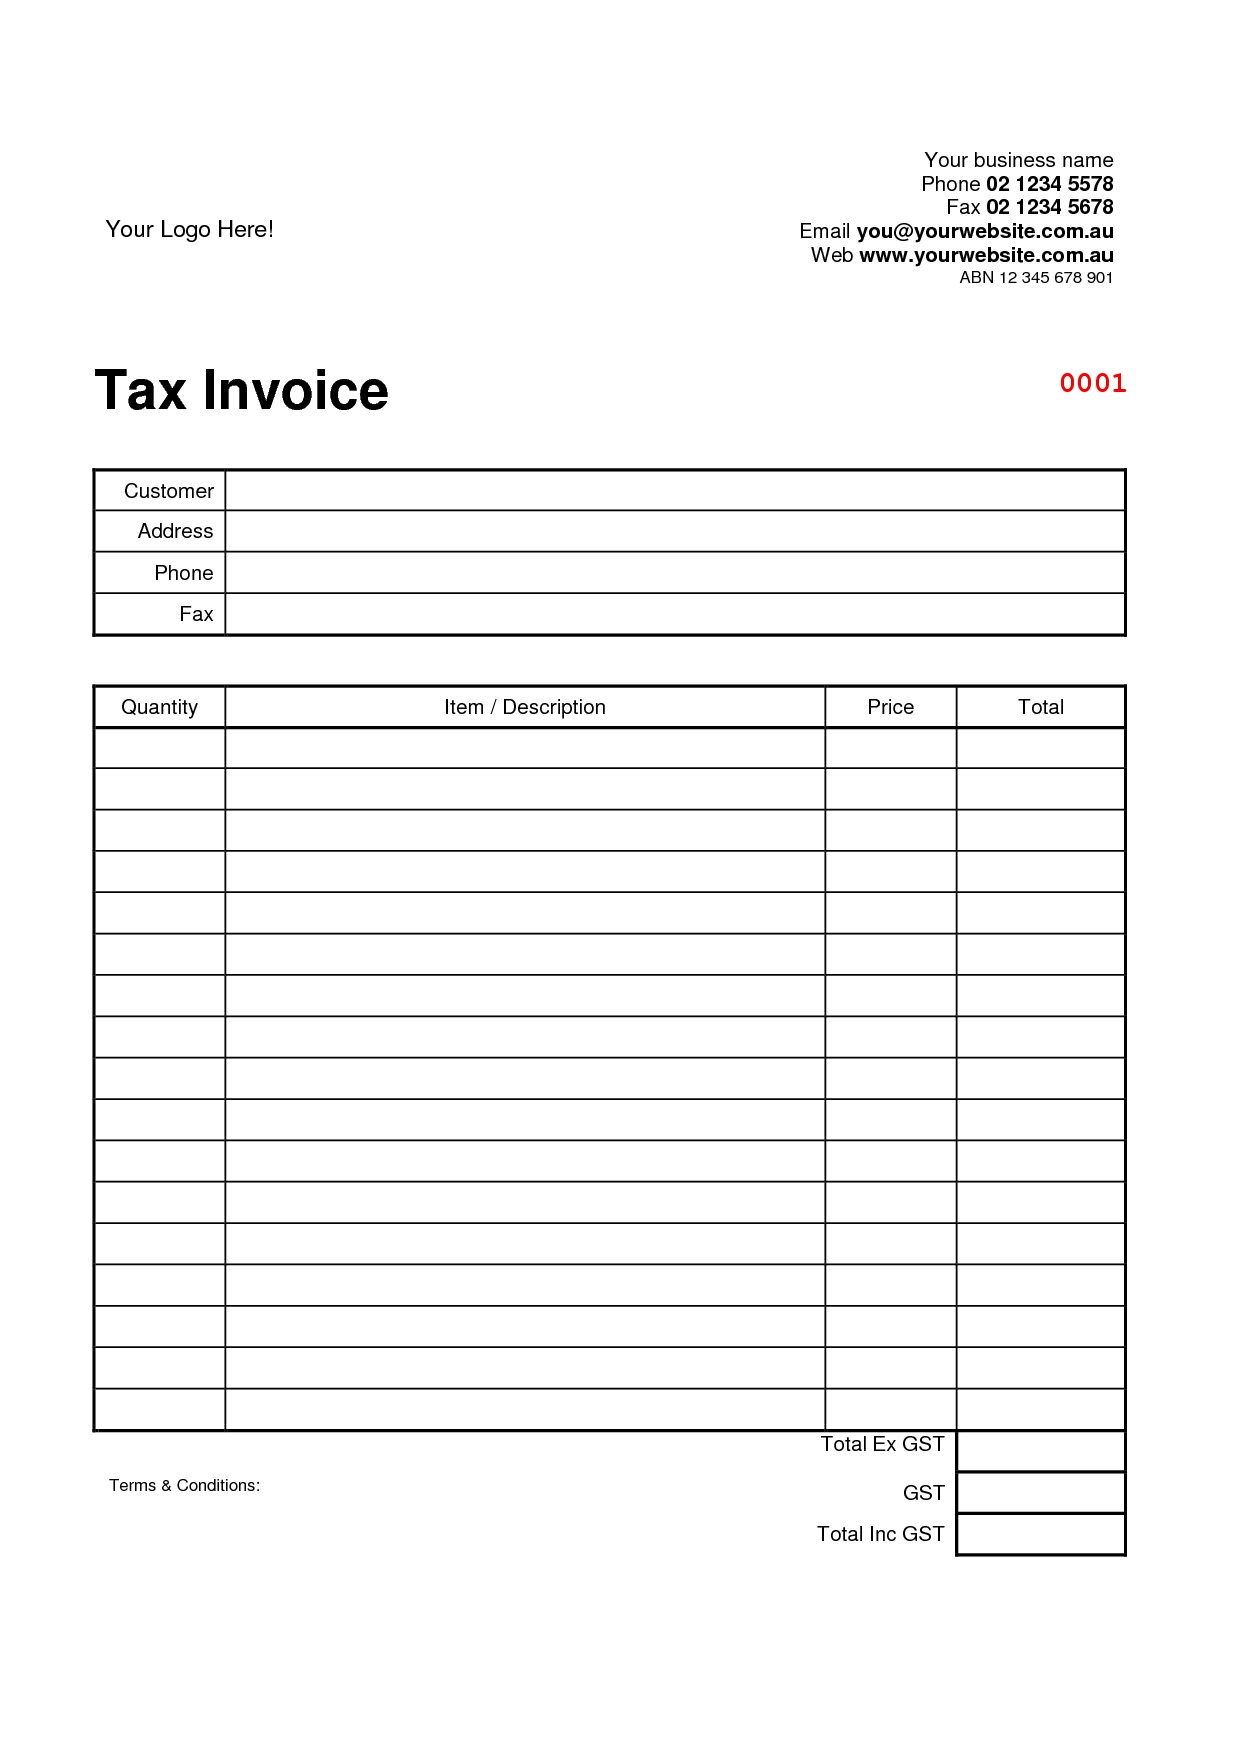 tax invoice format tax invoice template tax invoice template official invoice template